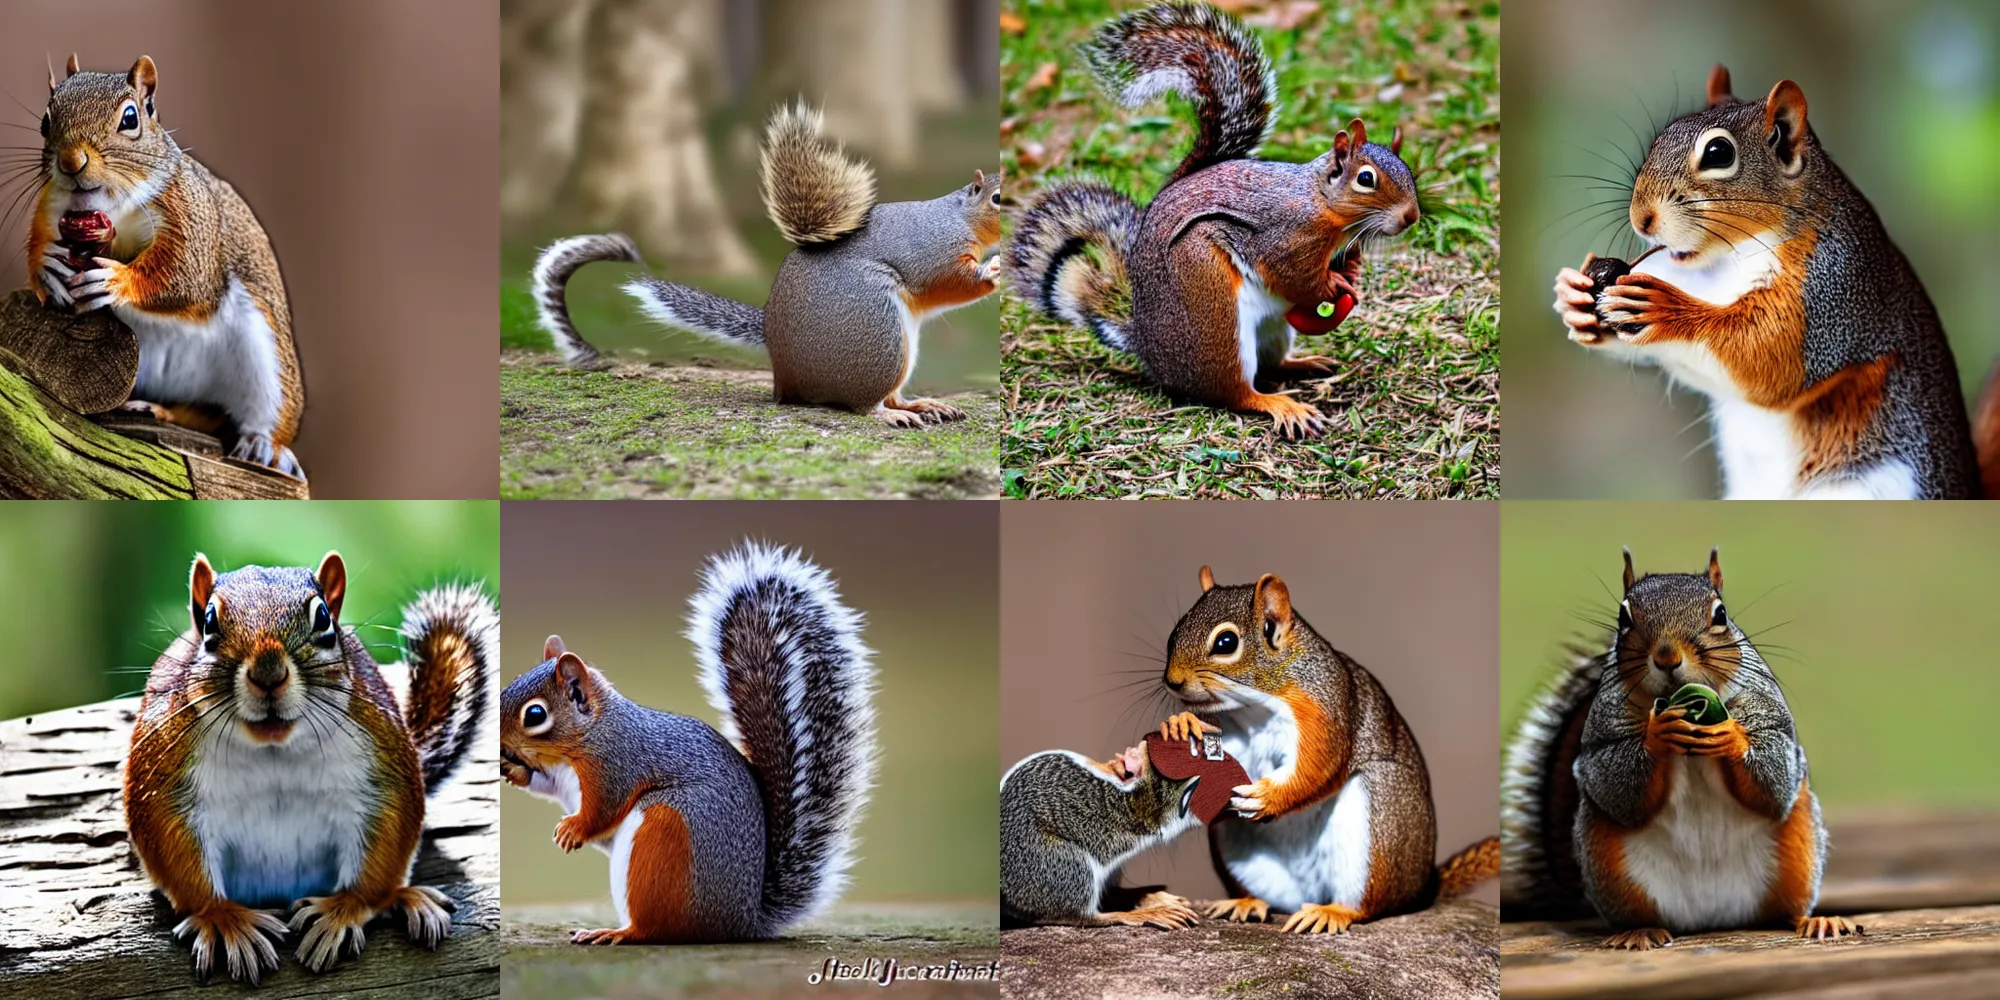 Prompt: jedi squirrel eating a jedi